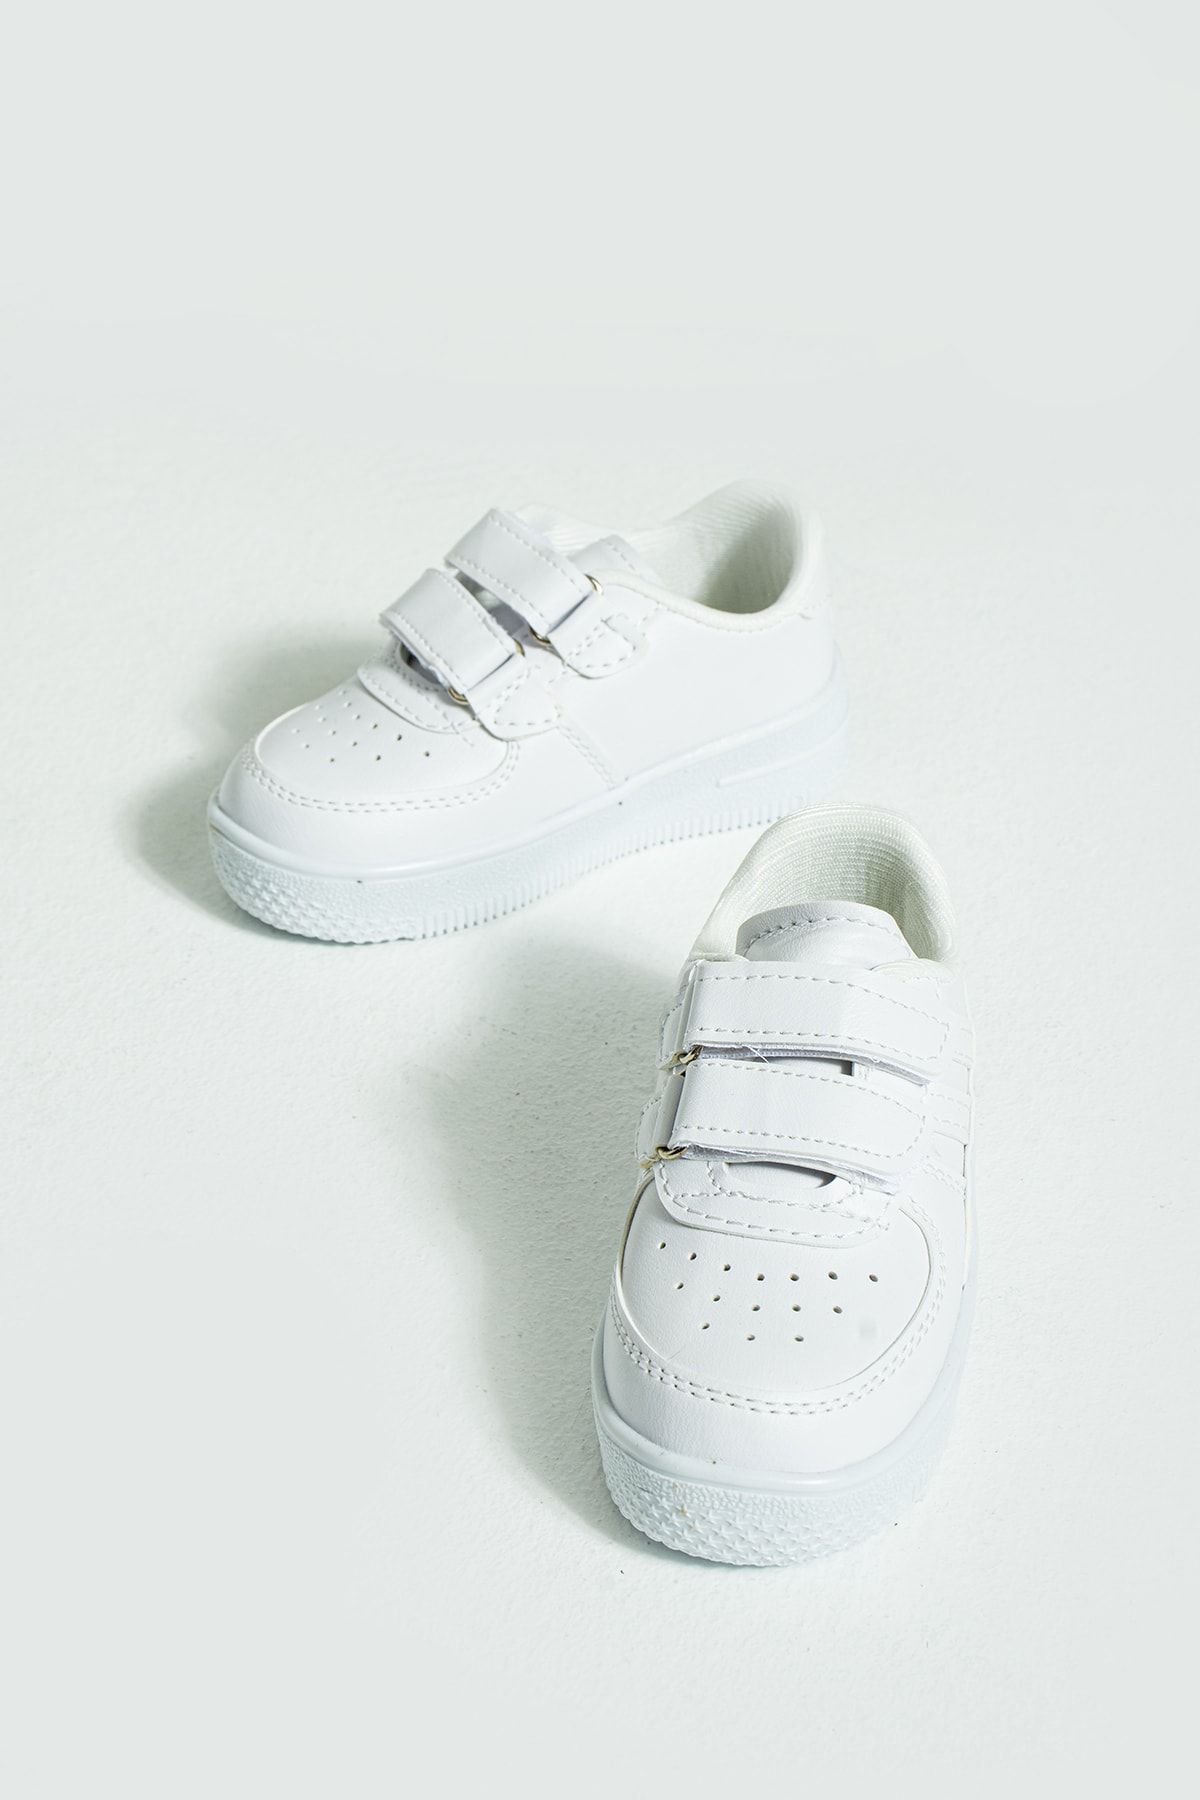 Pembe Potin Çocuk Unisex Beyaz Sneakers Cırtlı Spor Rahat Çocuk Ayakkabısı